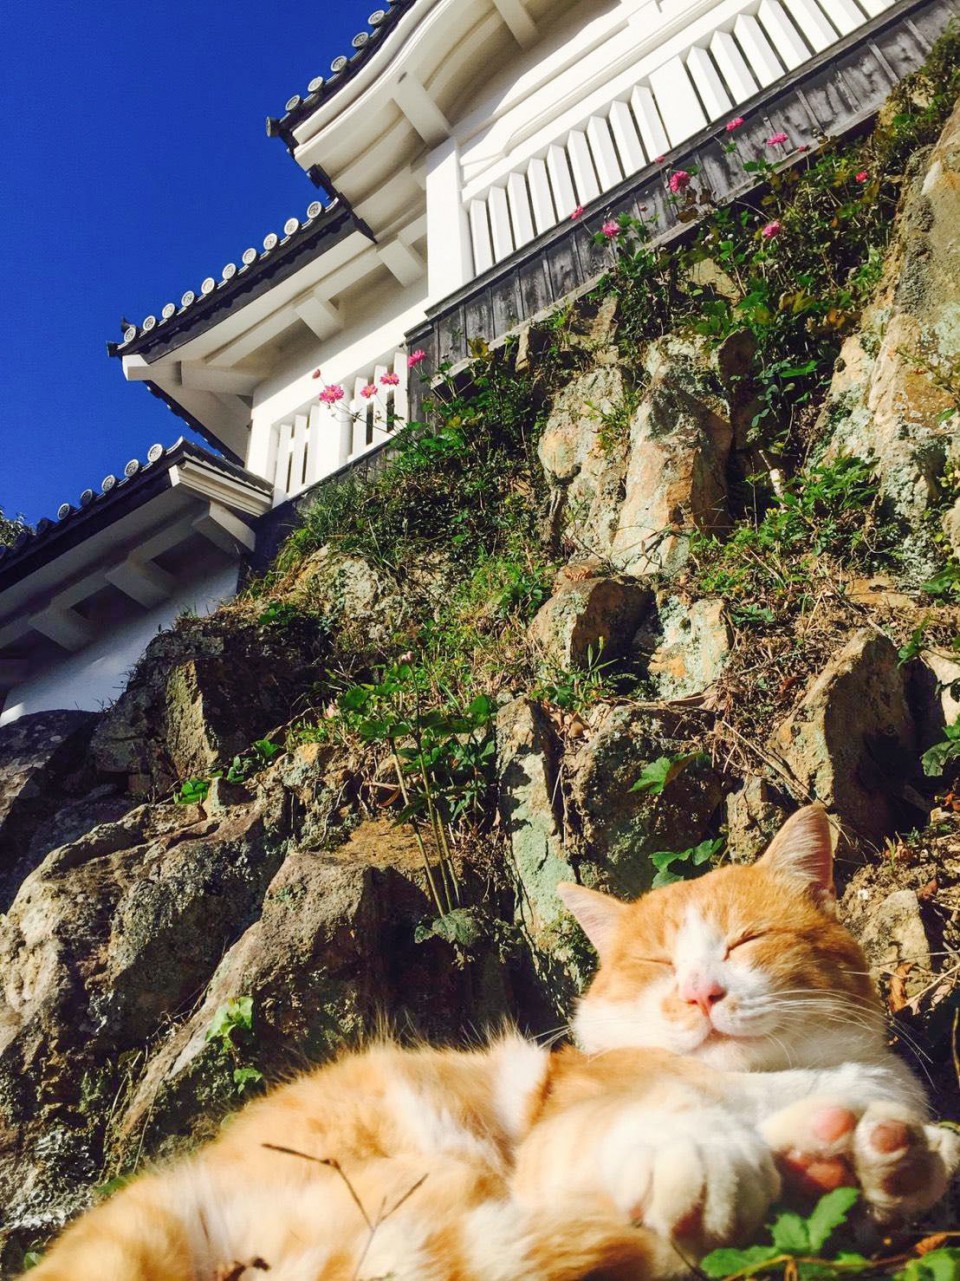 Chú mèo đi lạc được phong làm chúa tể lâu đài cổ ở Nhật Bản, thu hút du khách nườm nượp đến thăm - Ảnh 4.